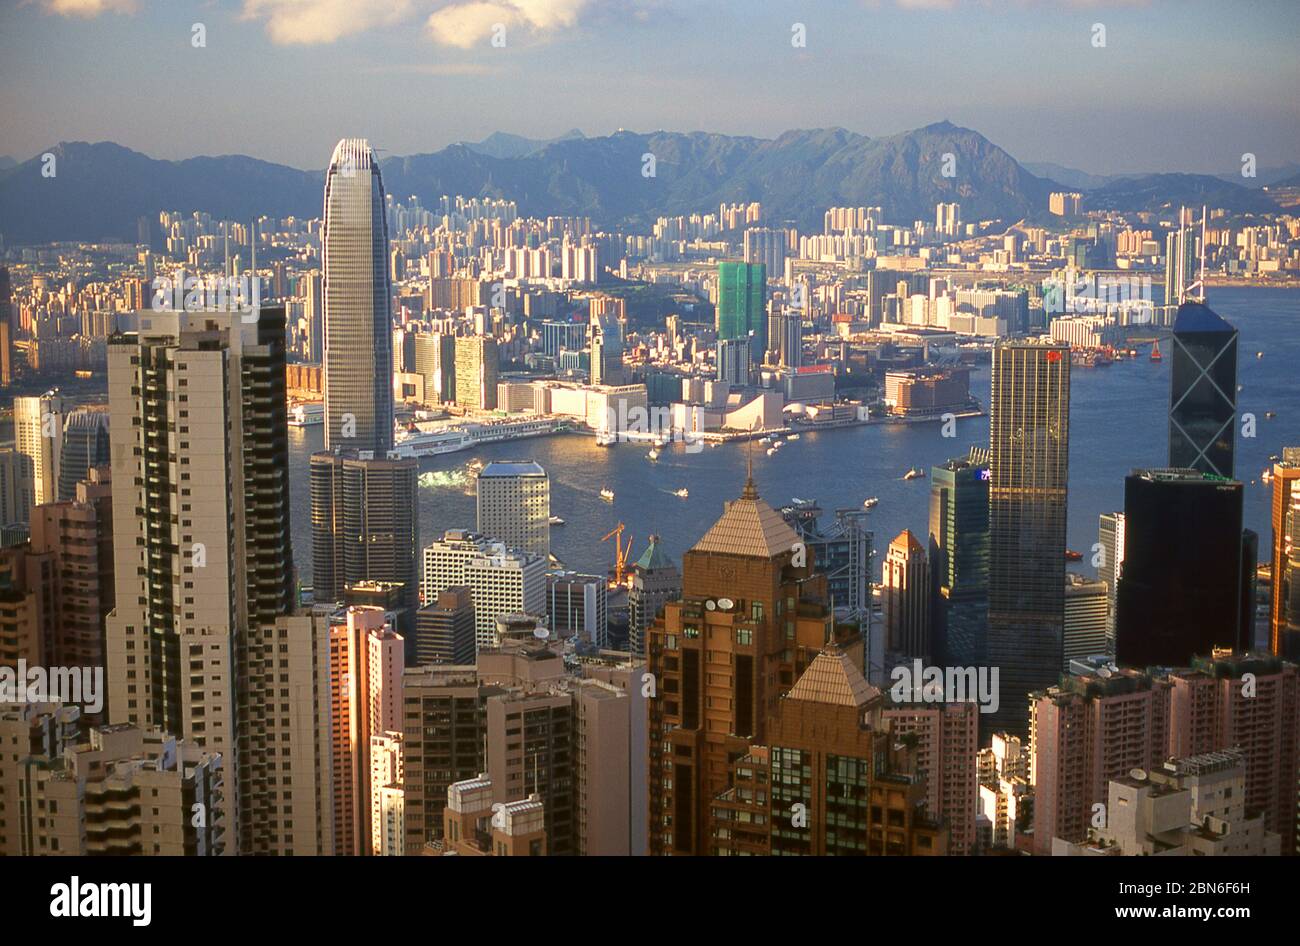 China: Hong Kong Insel und Hafen vom Victoria Peak aus gesehen, mit Kowloon im Hintergrund, Hong Kong Insel. Ursprünglich ein dünn besiedeltes Gebiet o Stockfoto